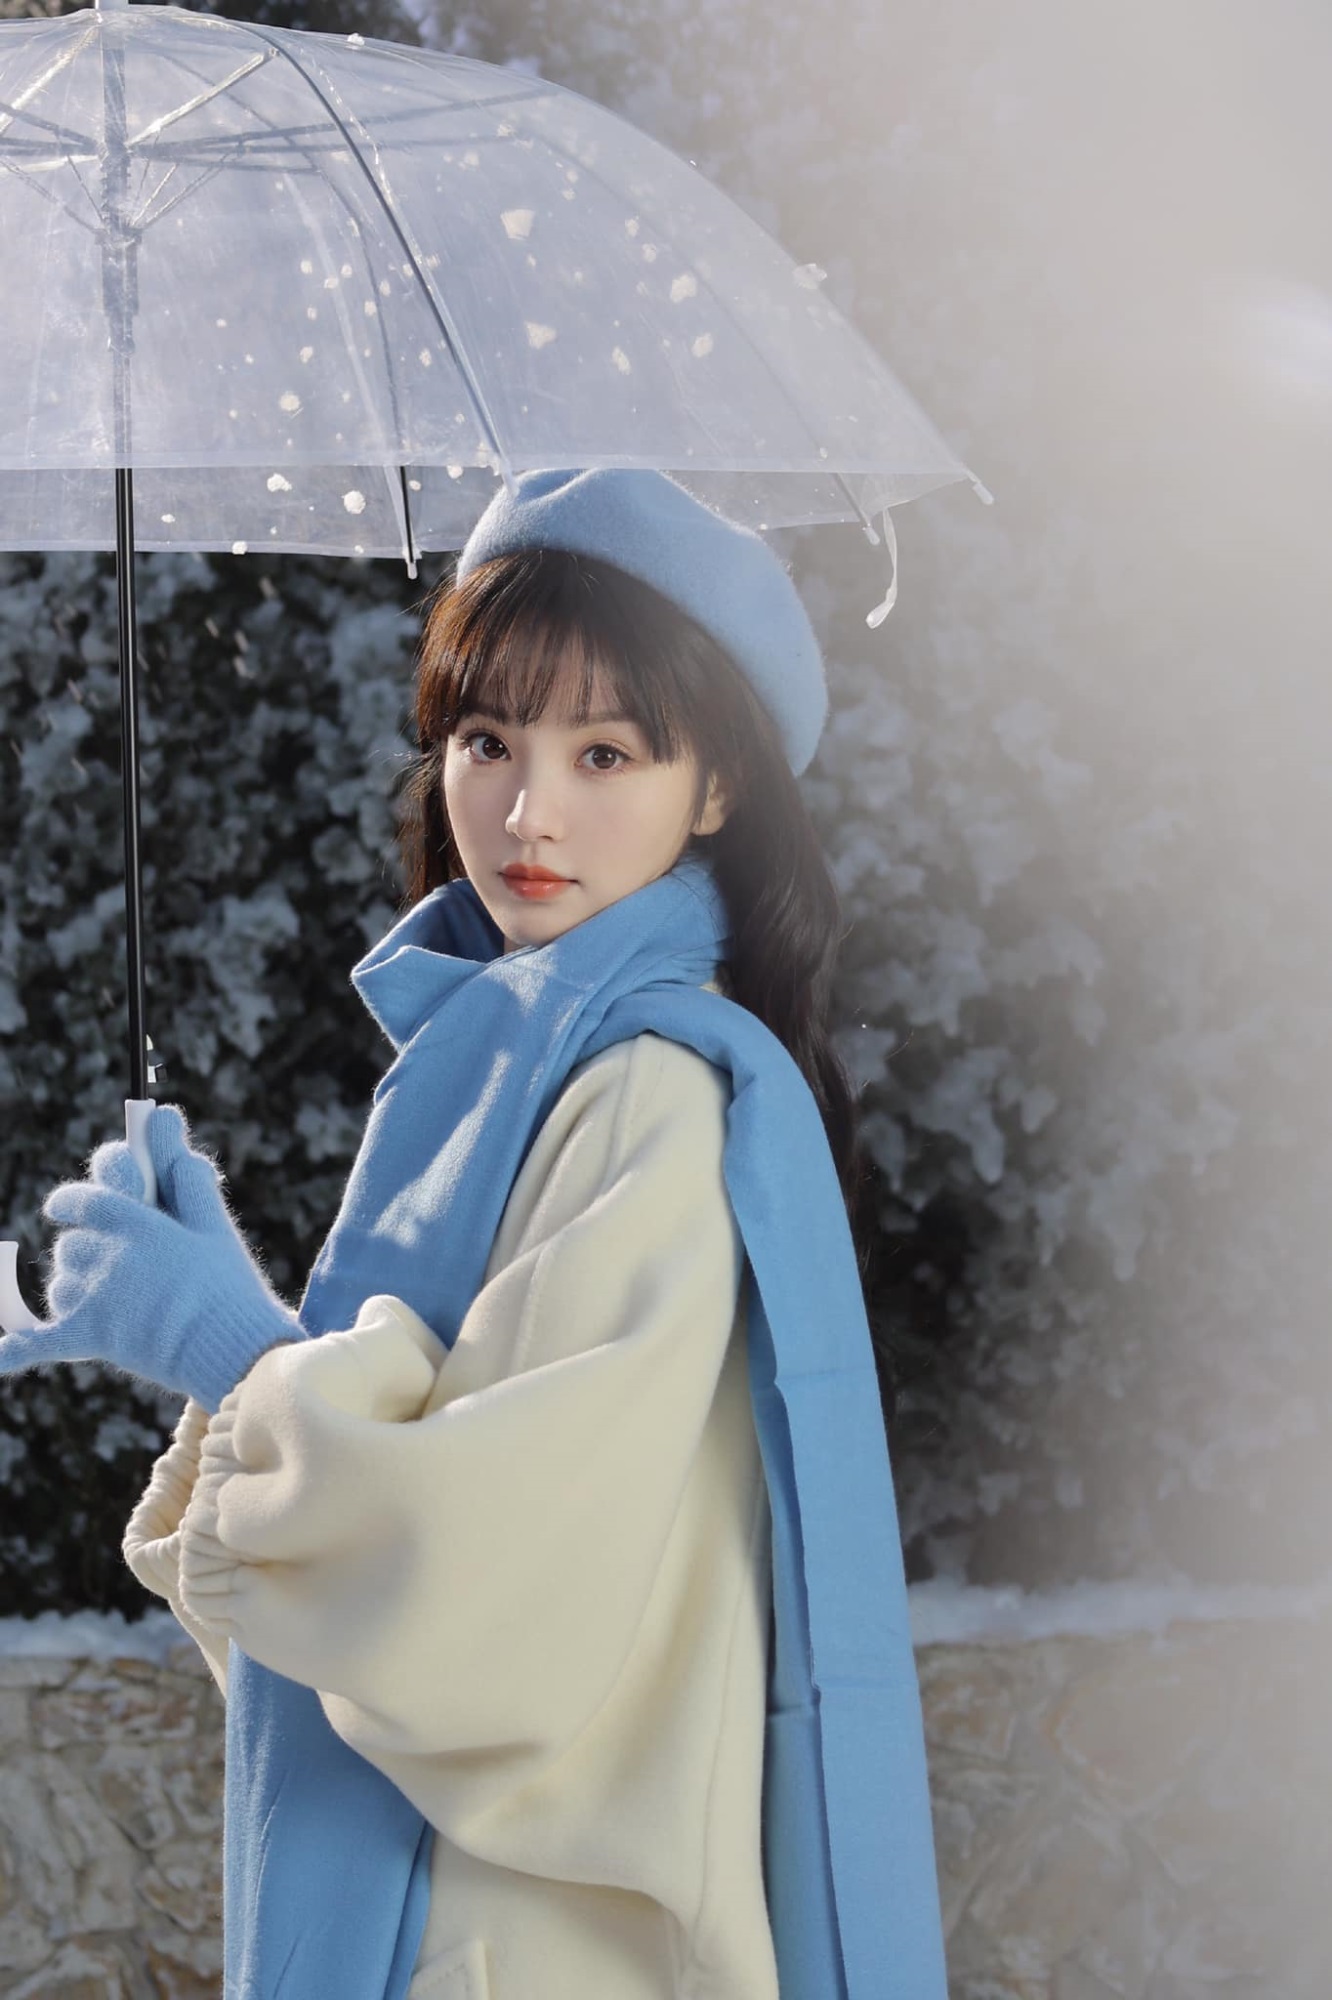 Điền Hi Vi hóa 'cô bé mùa đông' trong bộ ảnh mới, nhan sắc được netizen hết lời khen ngợi  - Ảnh 3